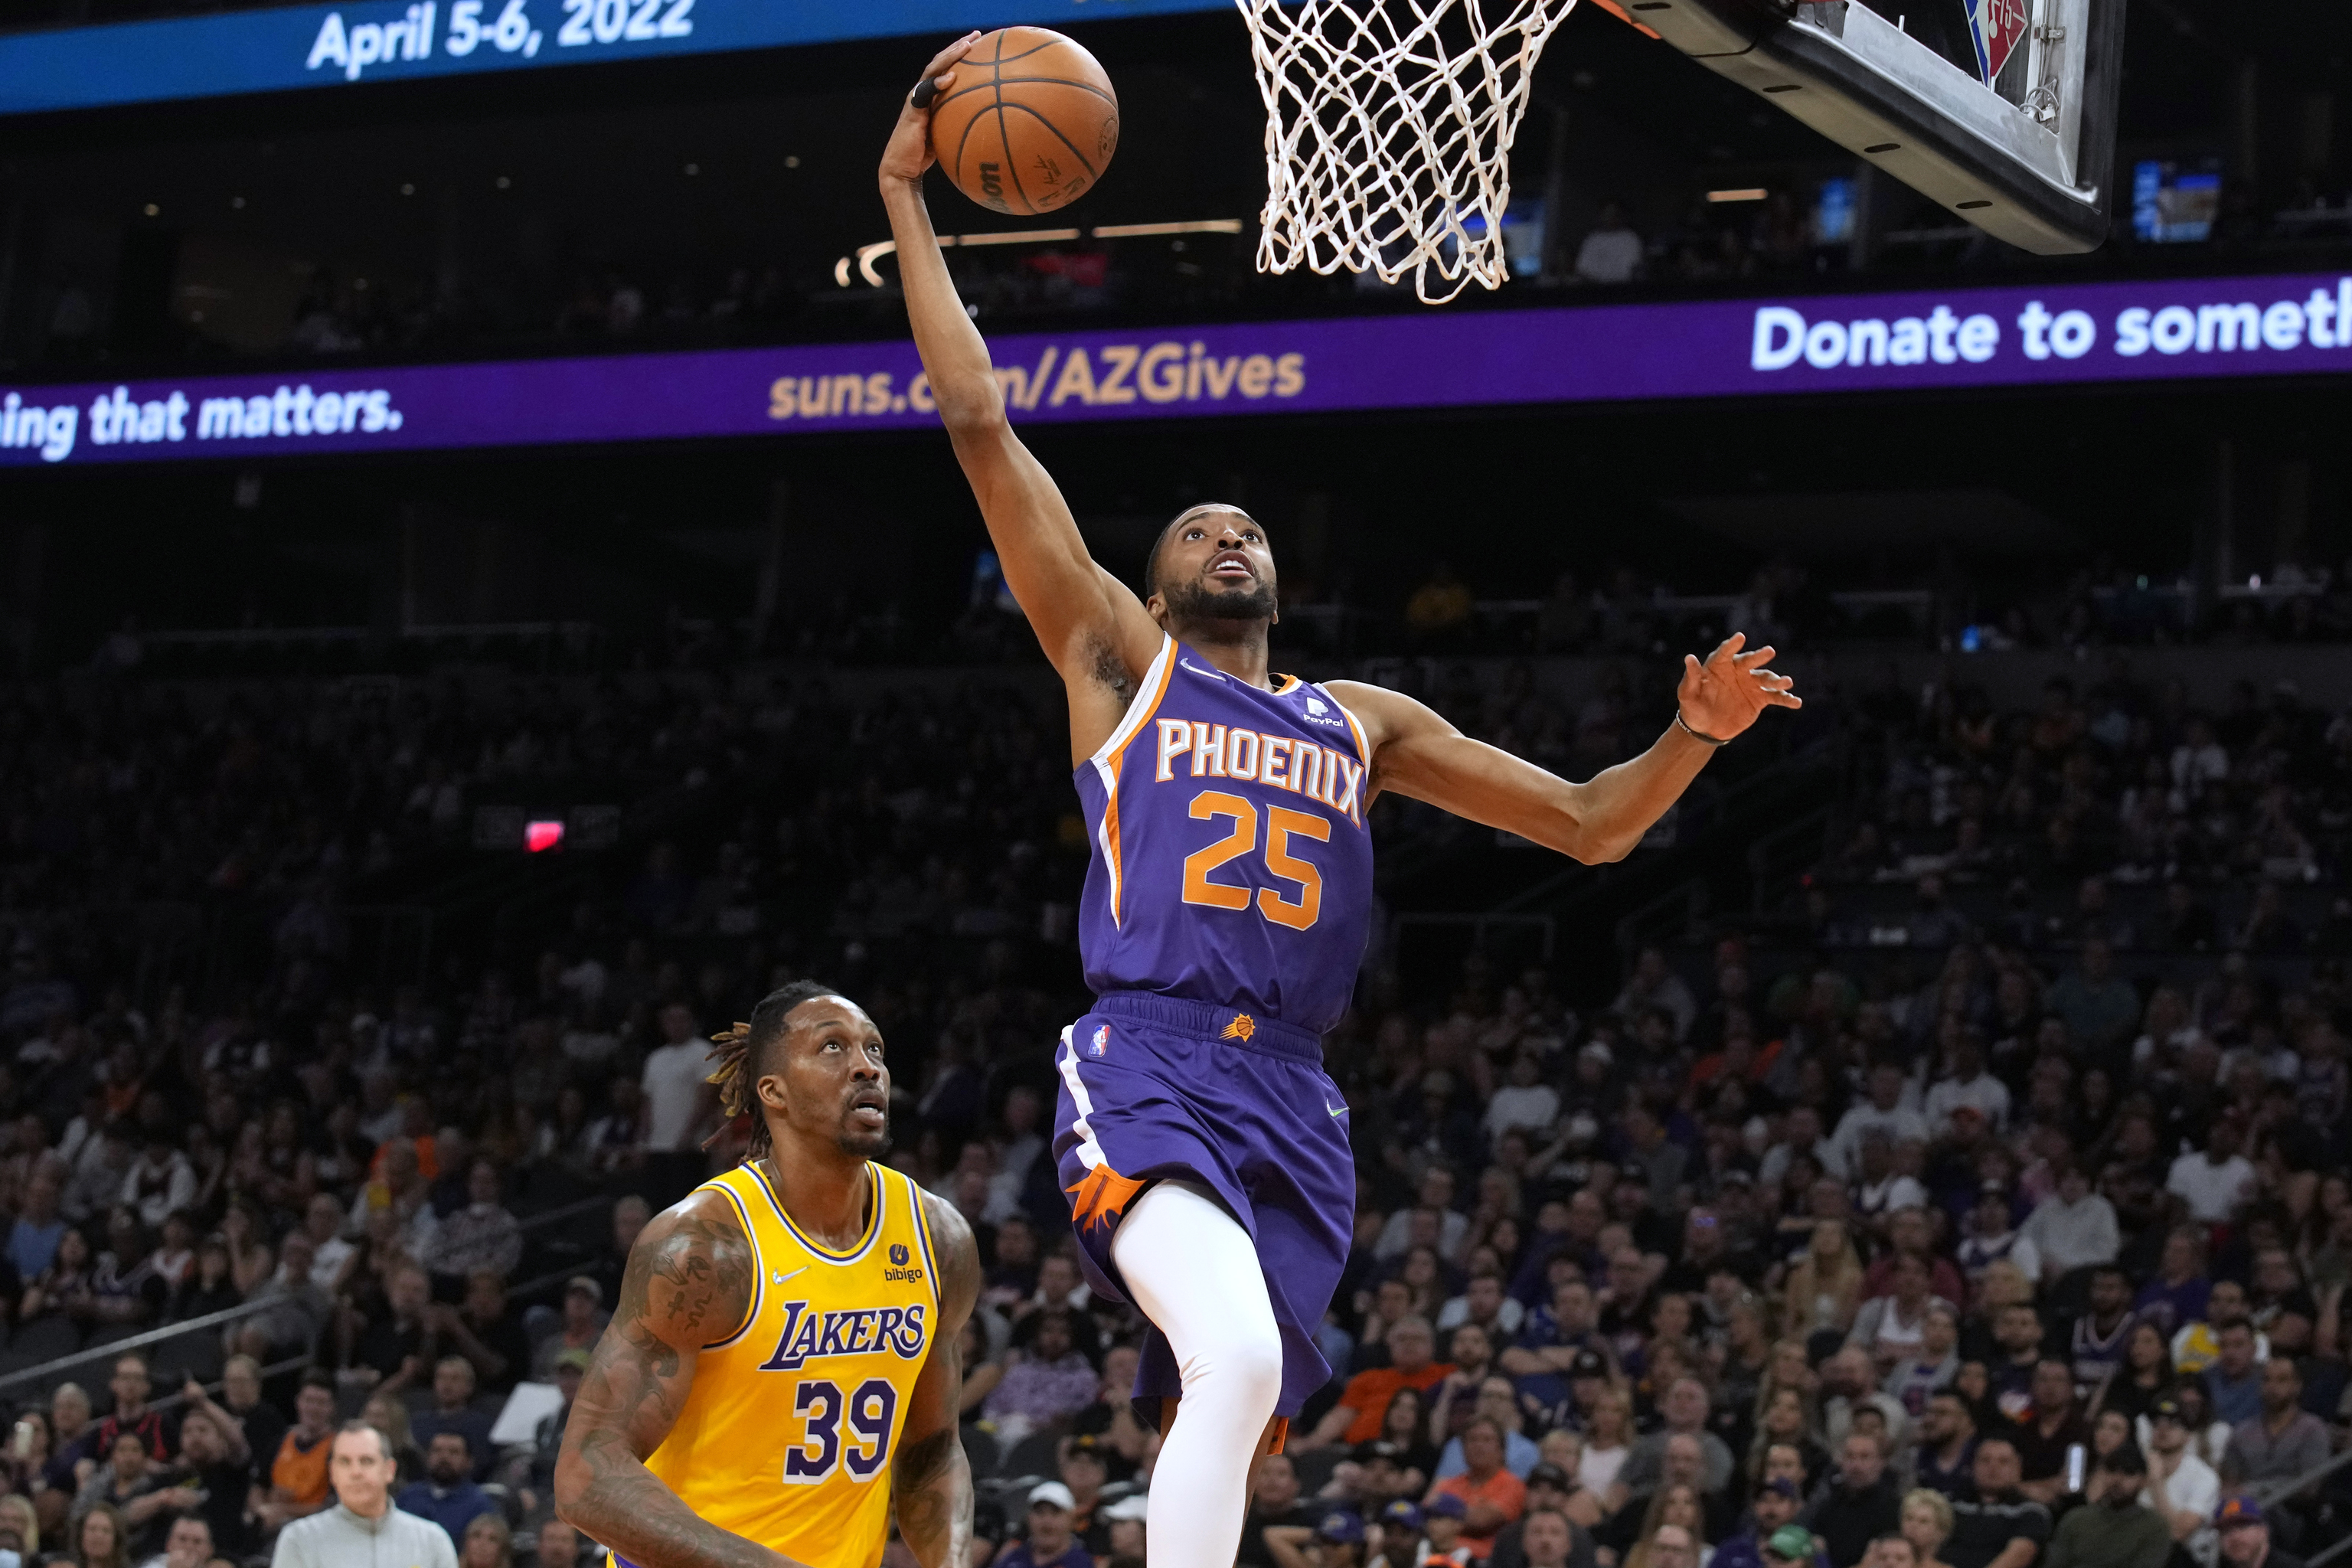 El alero de los Phoenix Suns, Mikal Bridges, supera al pvot de Los ngeles Lakers, Dwight Howard (39), durante la segunda mitad de un partido de baloncesto de la NBA, el martes 5 de abril de 2022, en Phoenix. Los Suns ganaron 121-110.